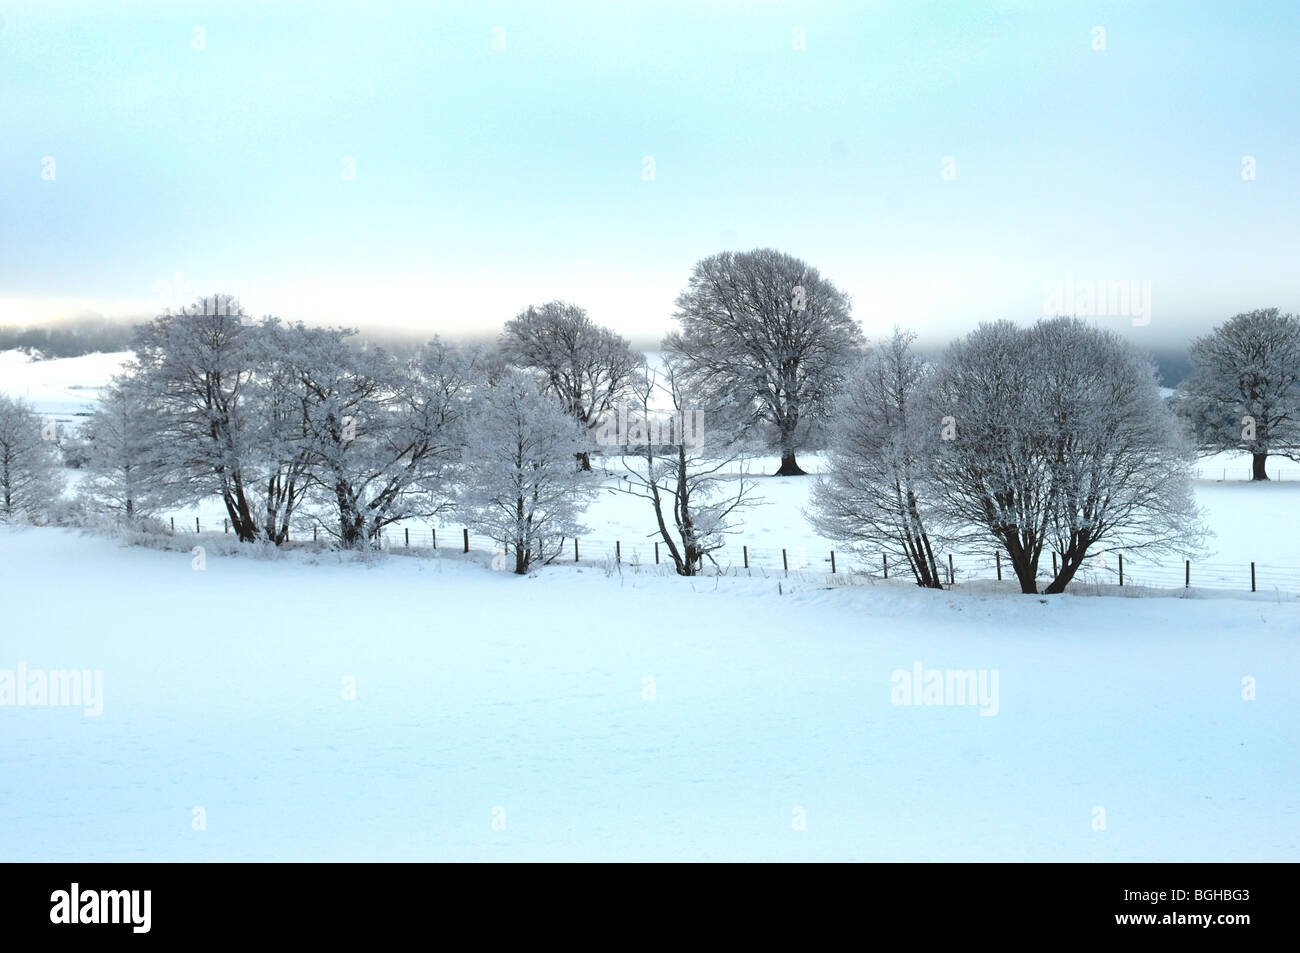 A snowy landscape scene in Perthshire, Scotland Stock Photo